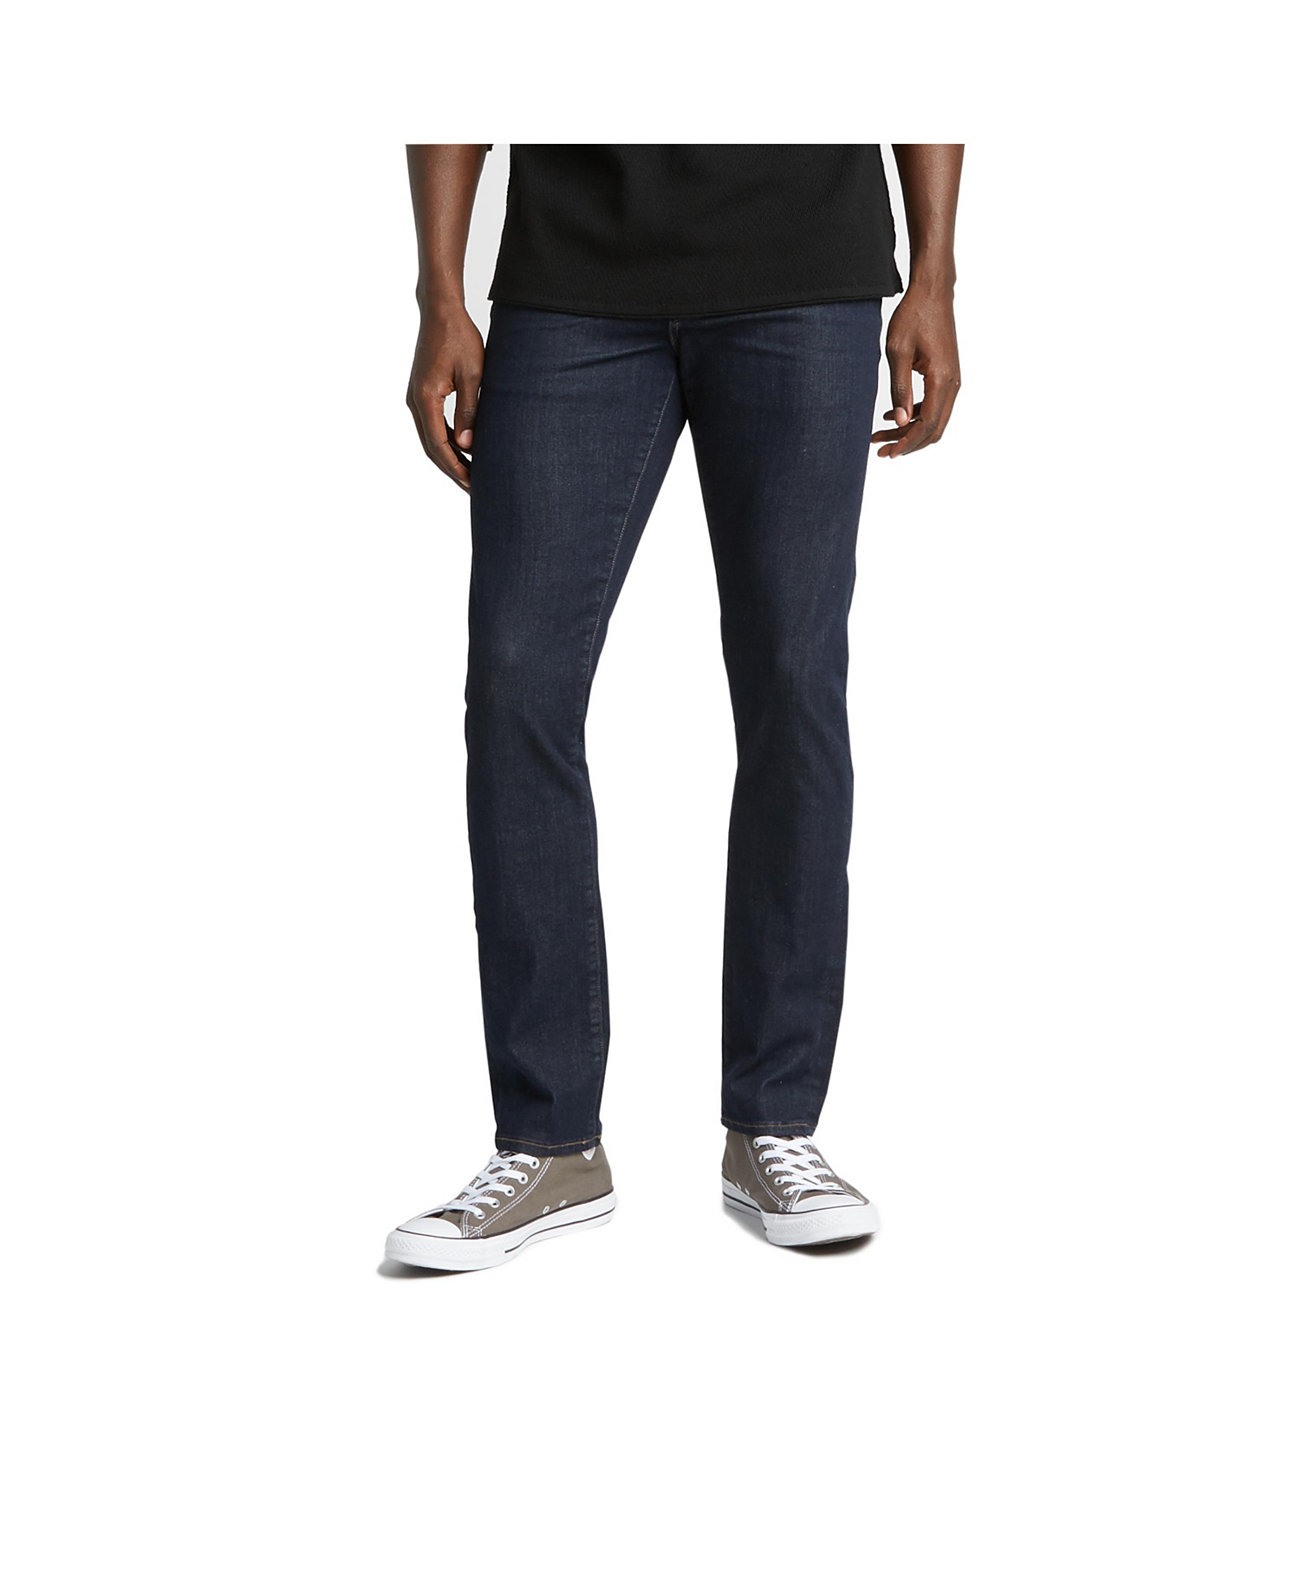 Мужские узкие джинсы Ashdown Classic Silver Jeans Co.